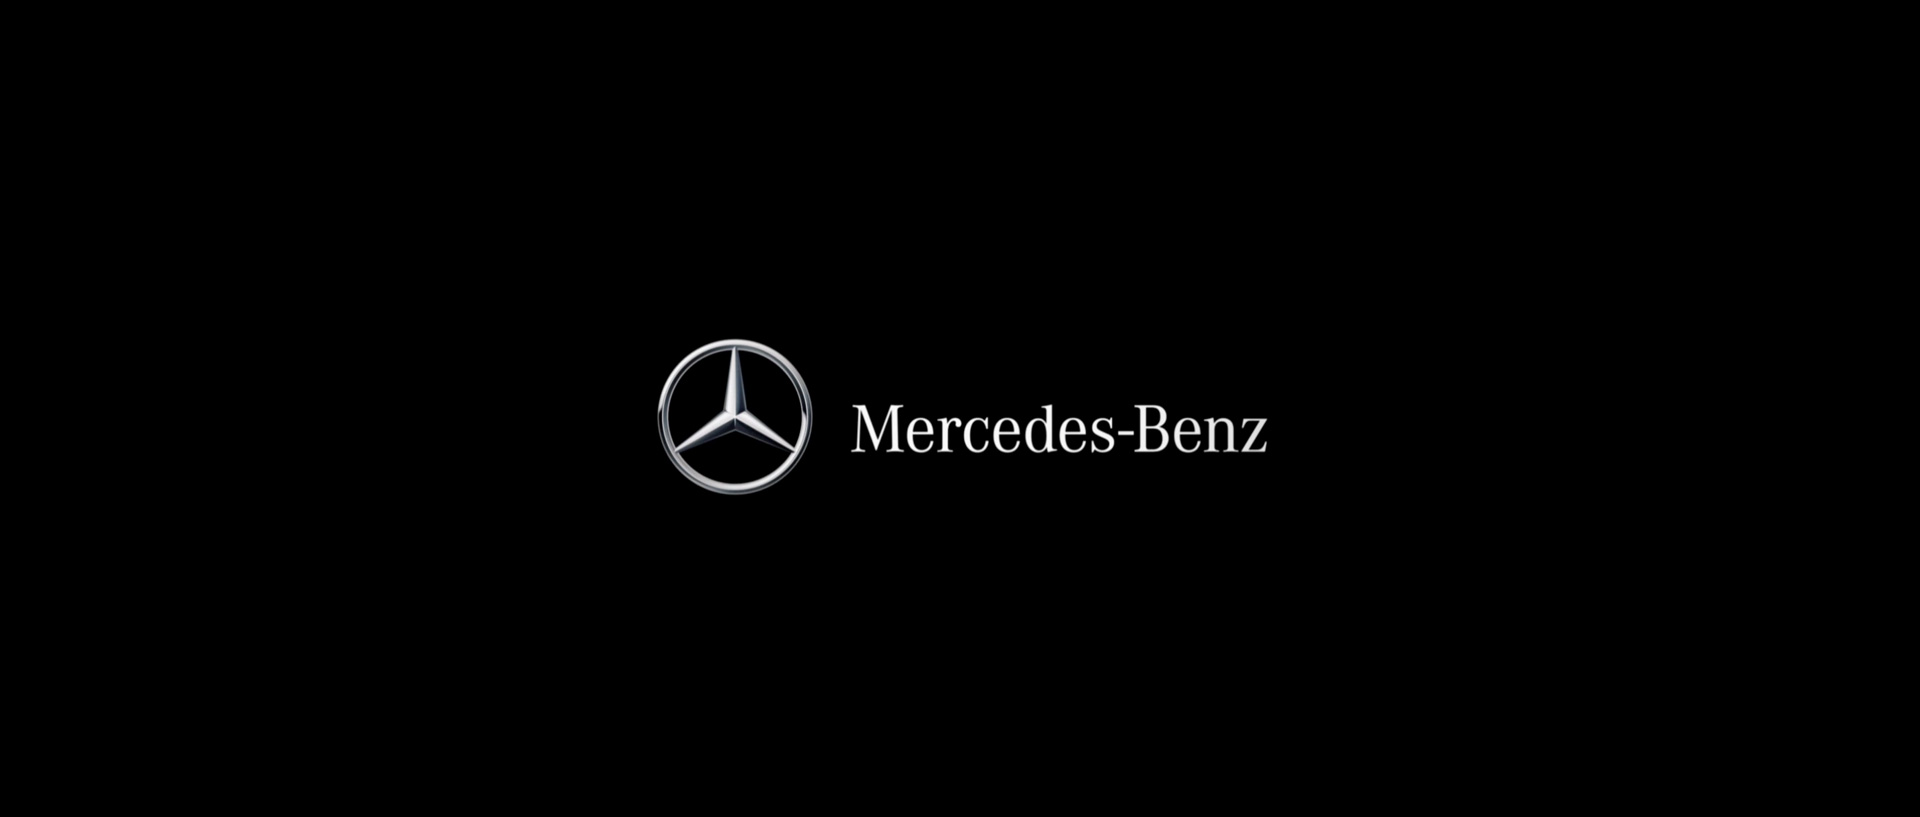 Mercedes Logo Transparent Background - image